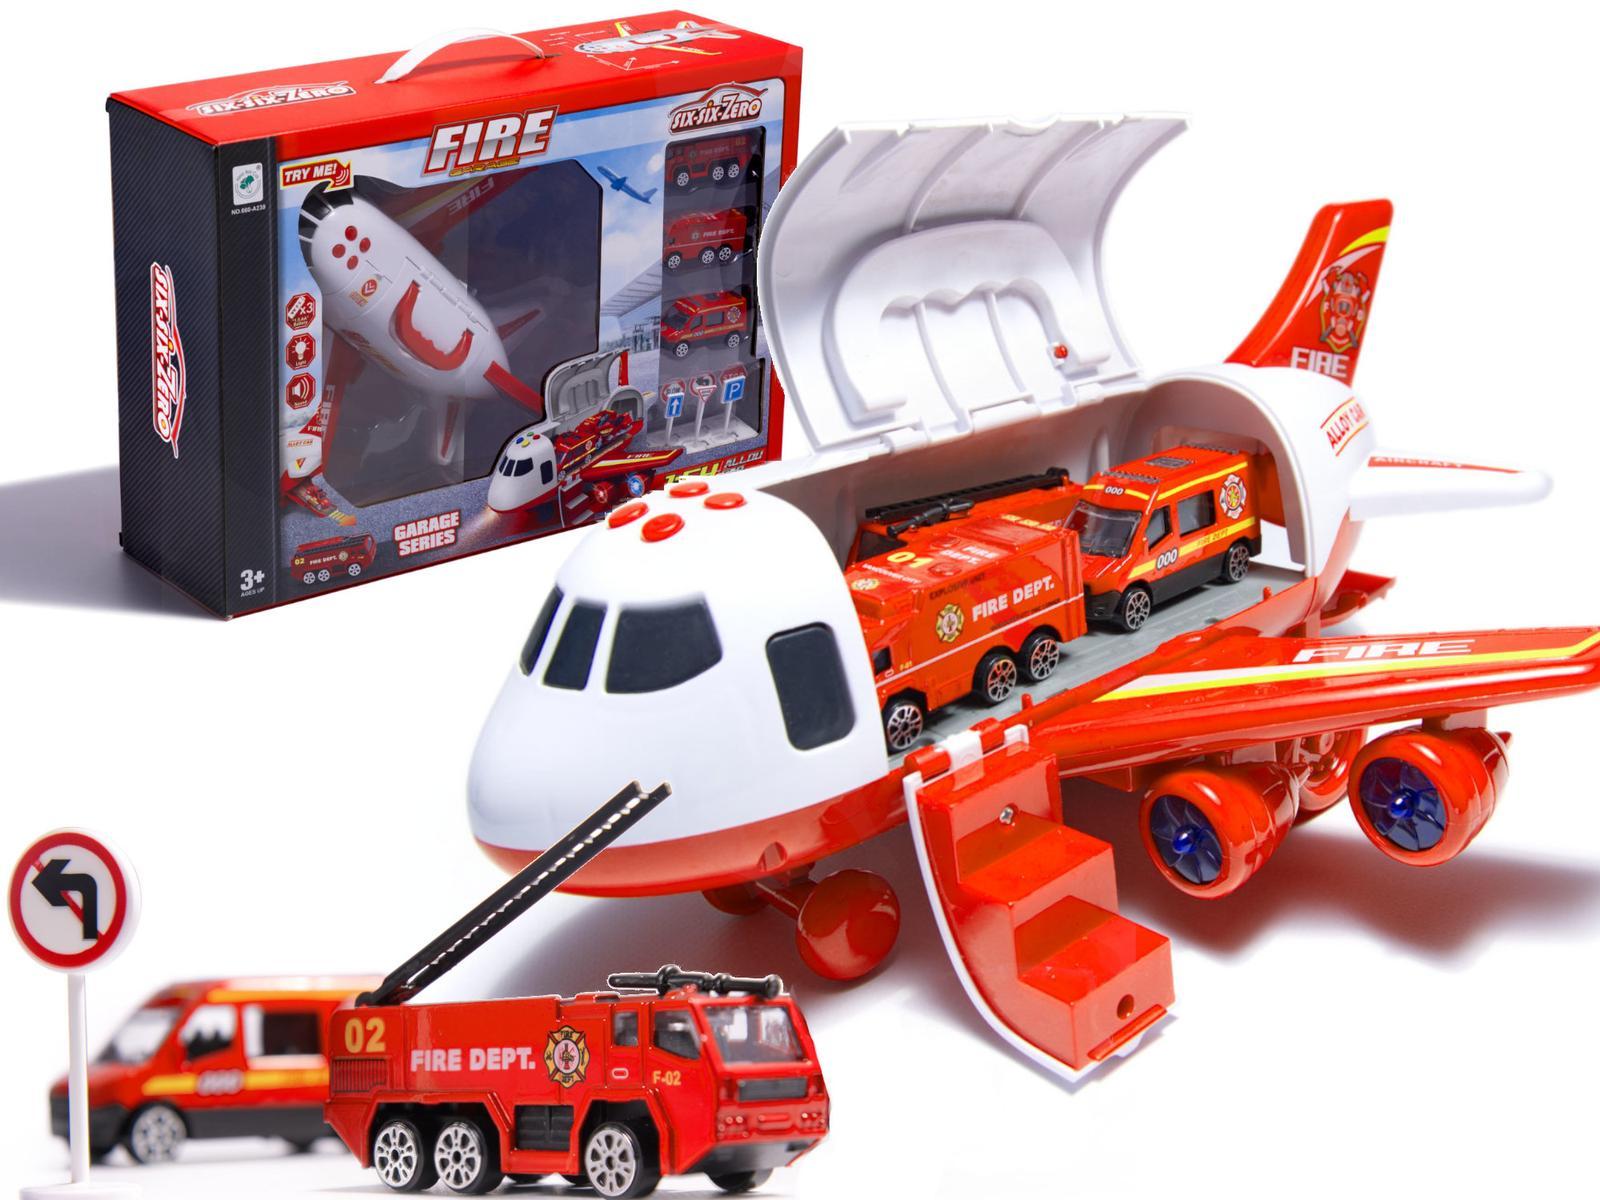 Transporter samolot + 3 pojazdy straż pożarna zabawka dla dzieci czerwona 41,5x31,5x14 cm nr. 16